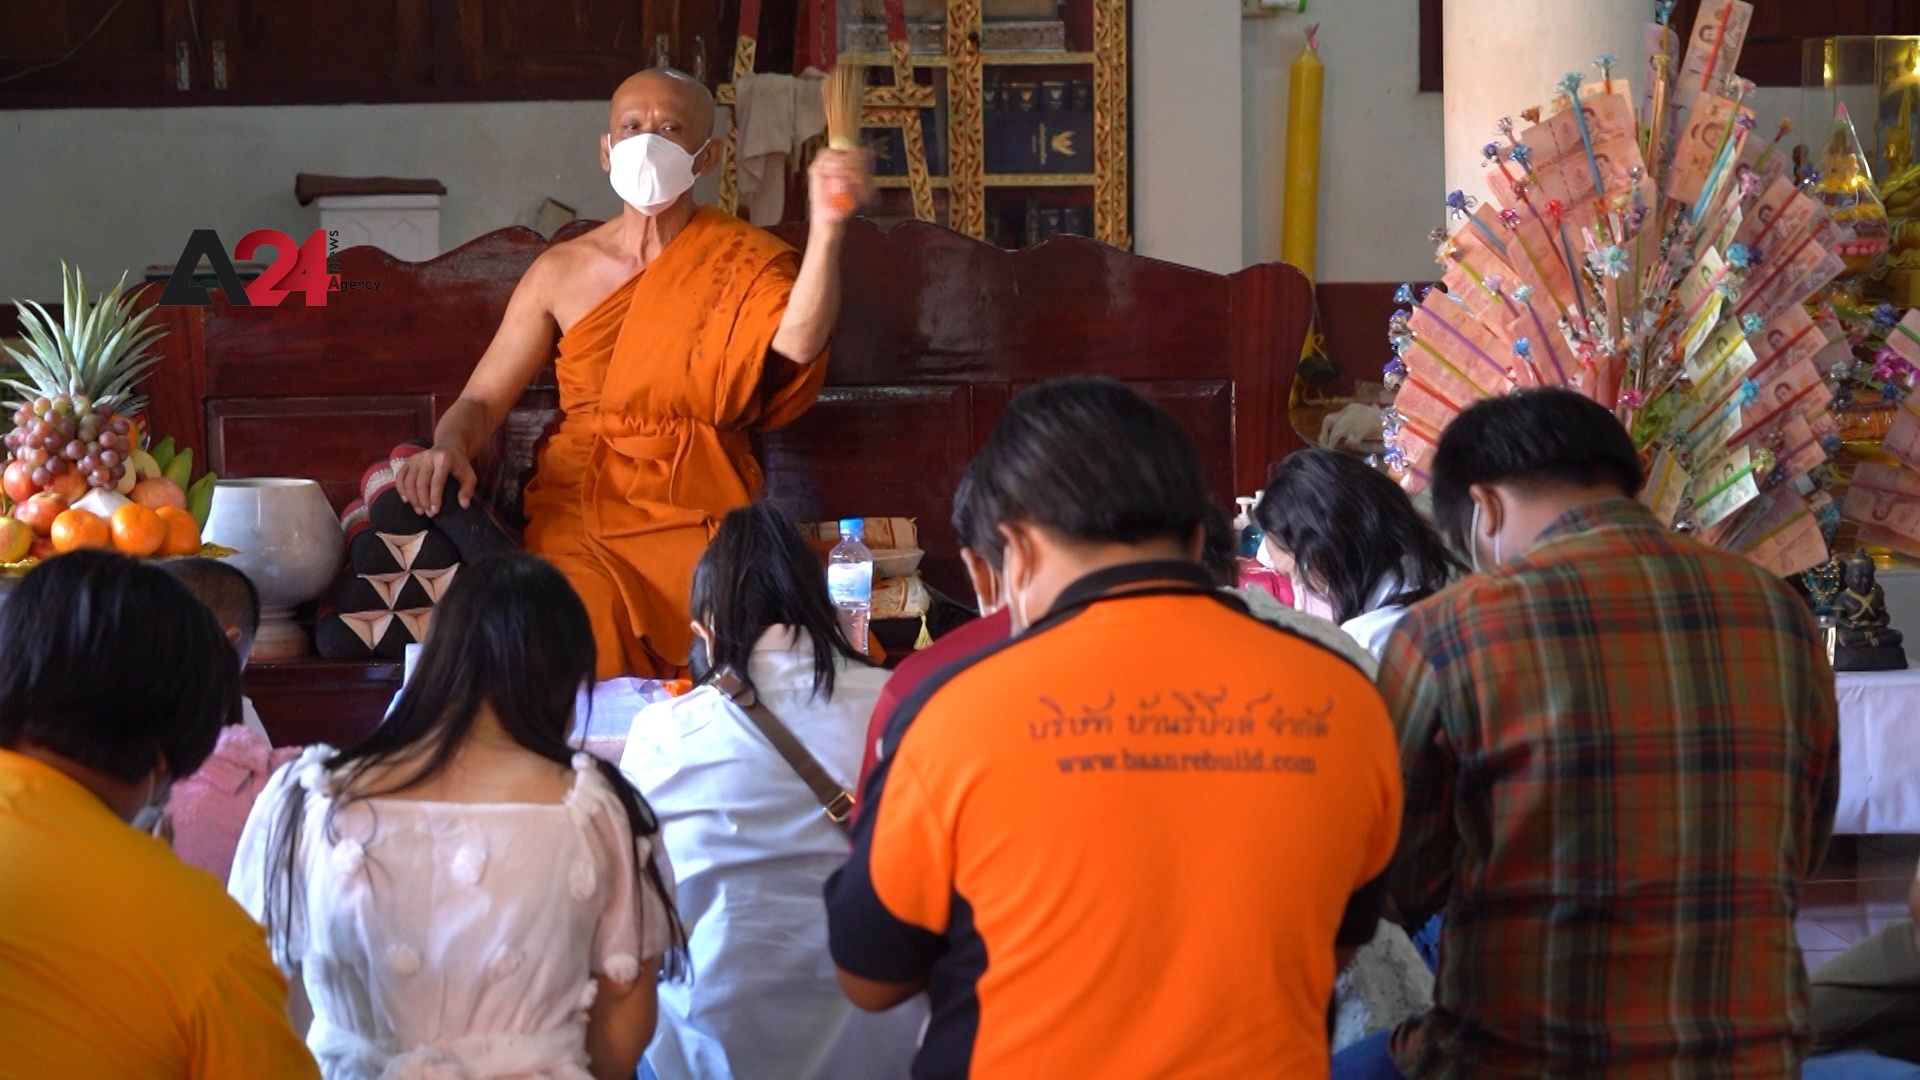 تايلاند - البوذيون يحيون مهرجان تود كاثين رغم تفشي كورونا